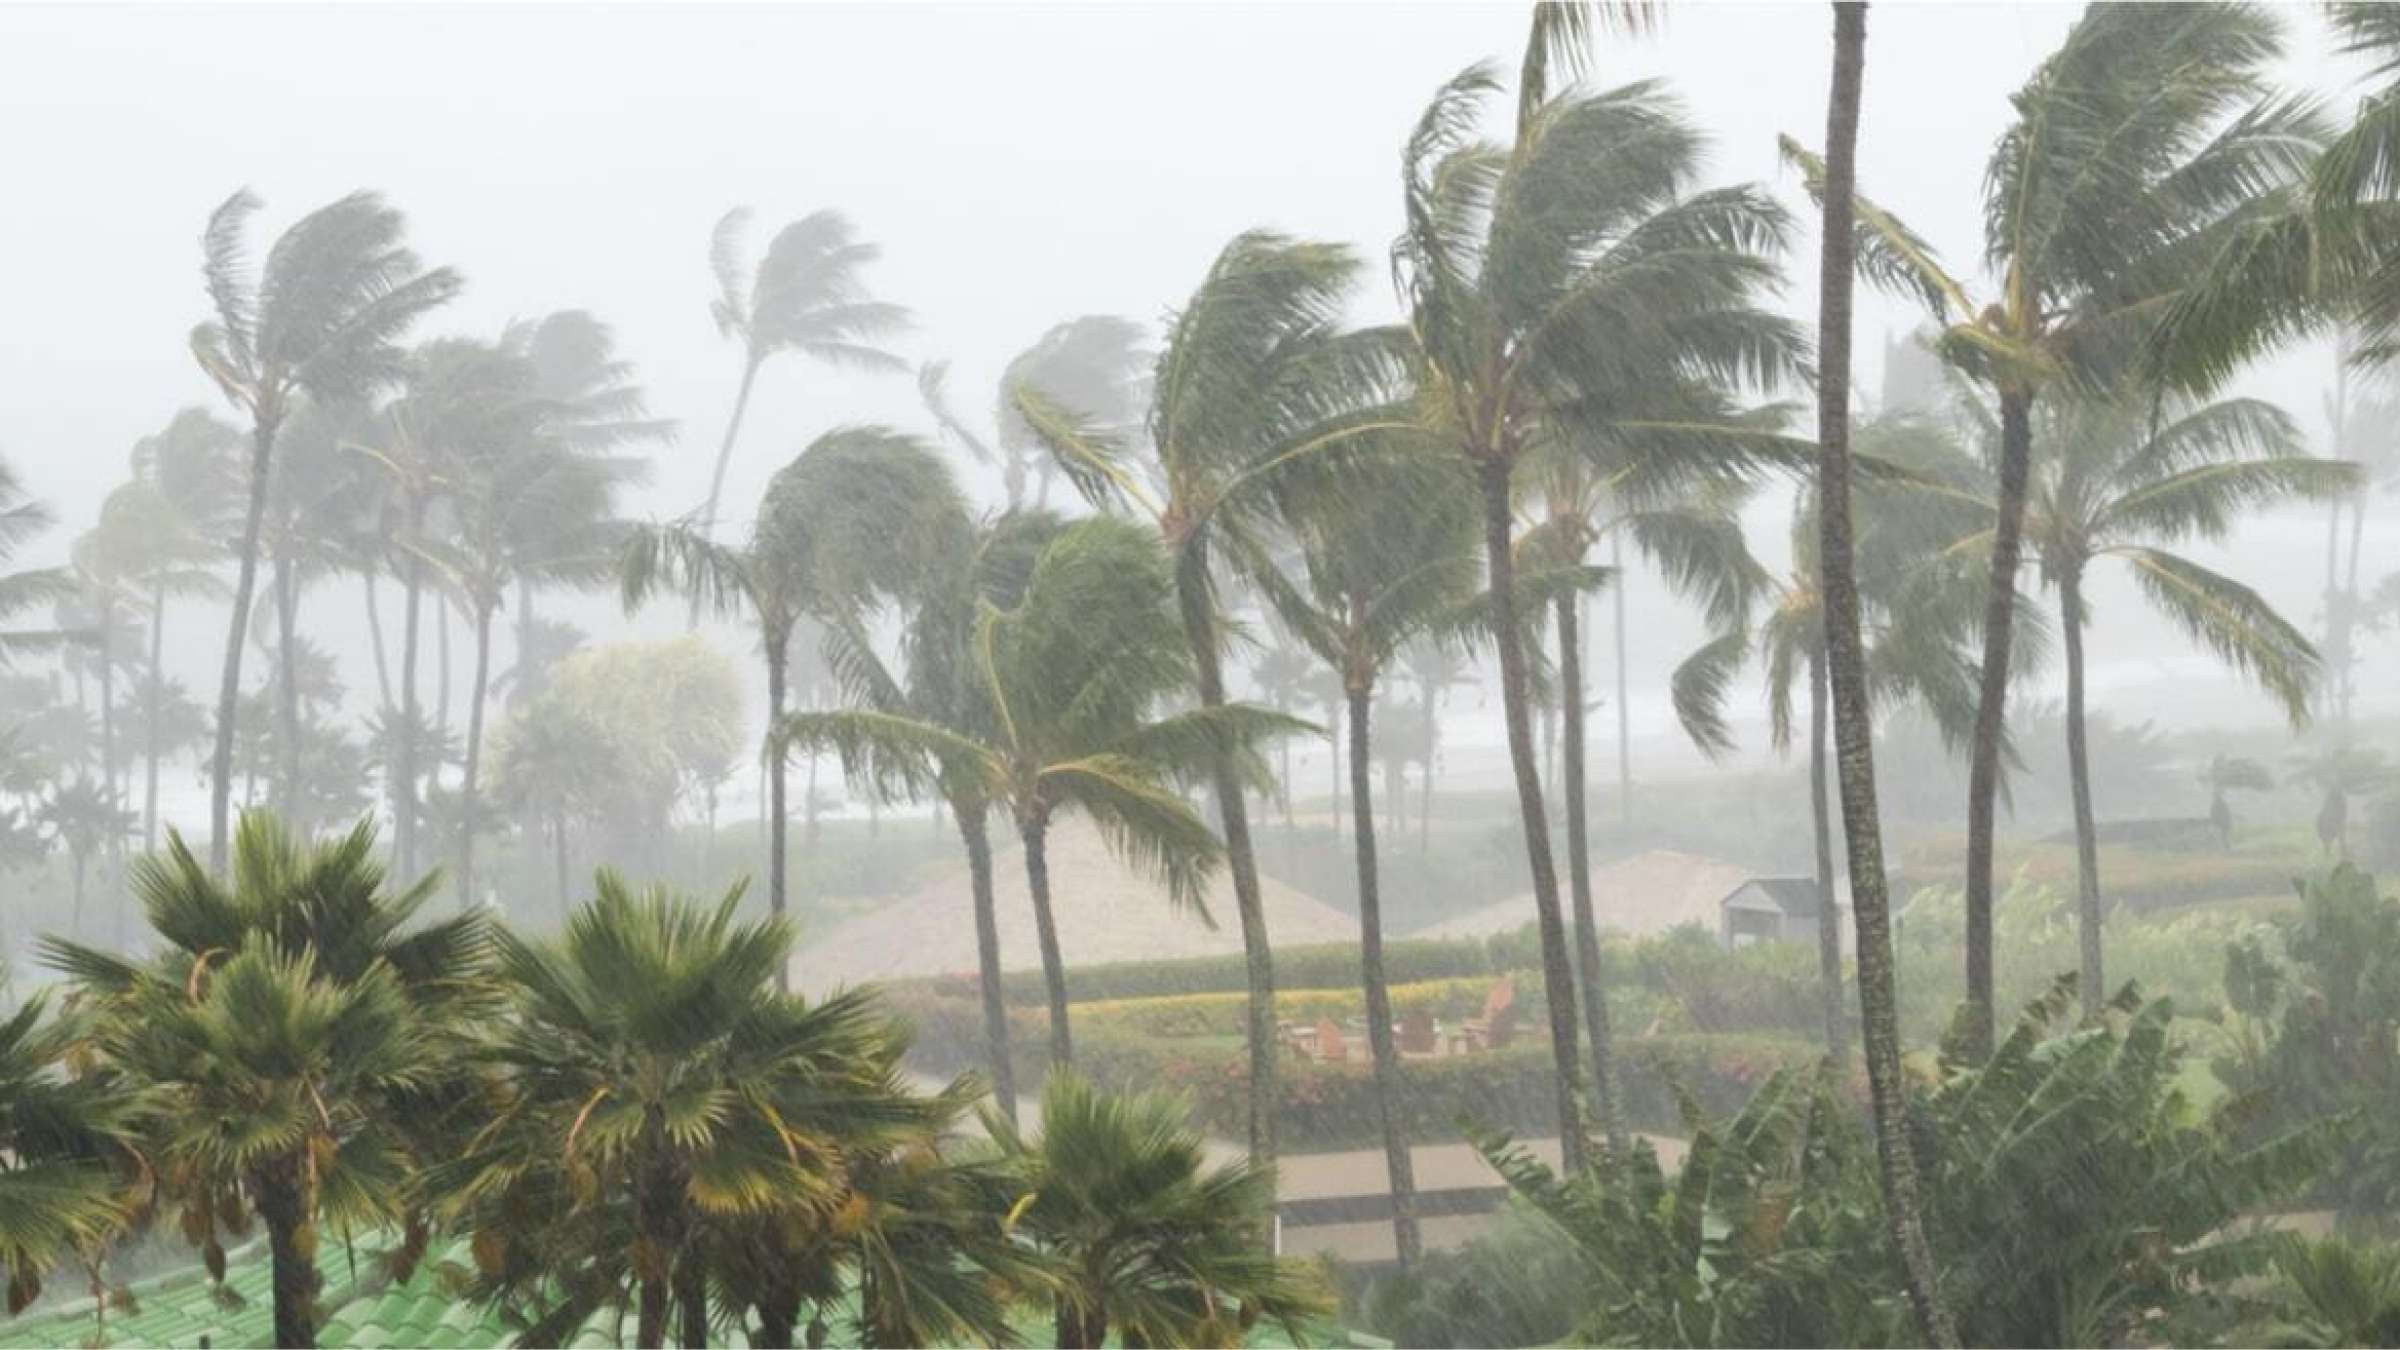 Global warming increases hurricane rainfall